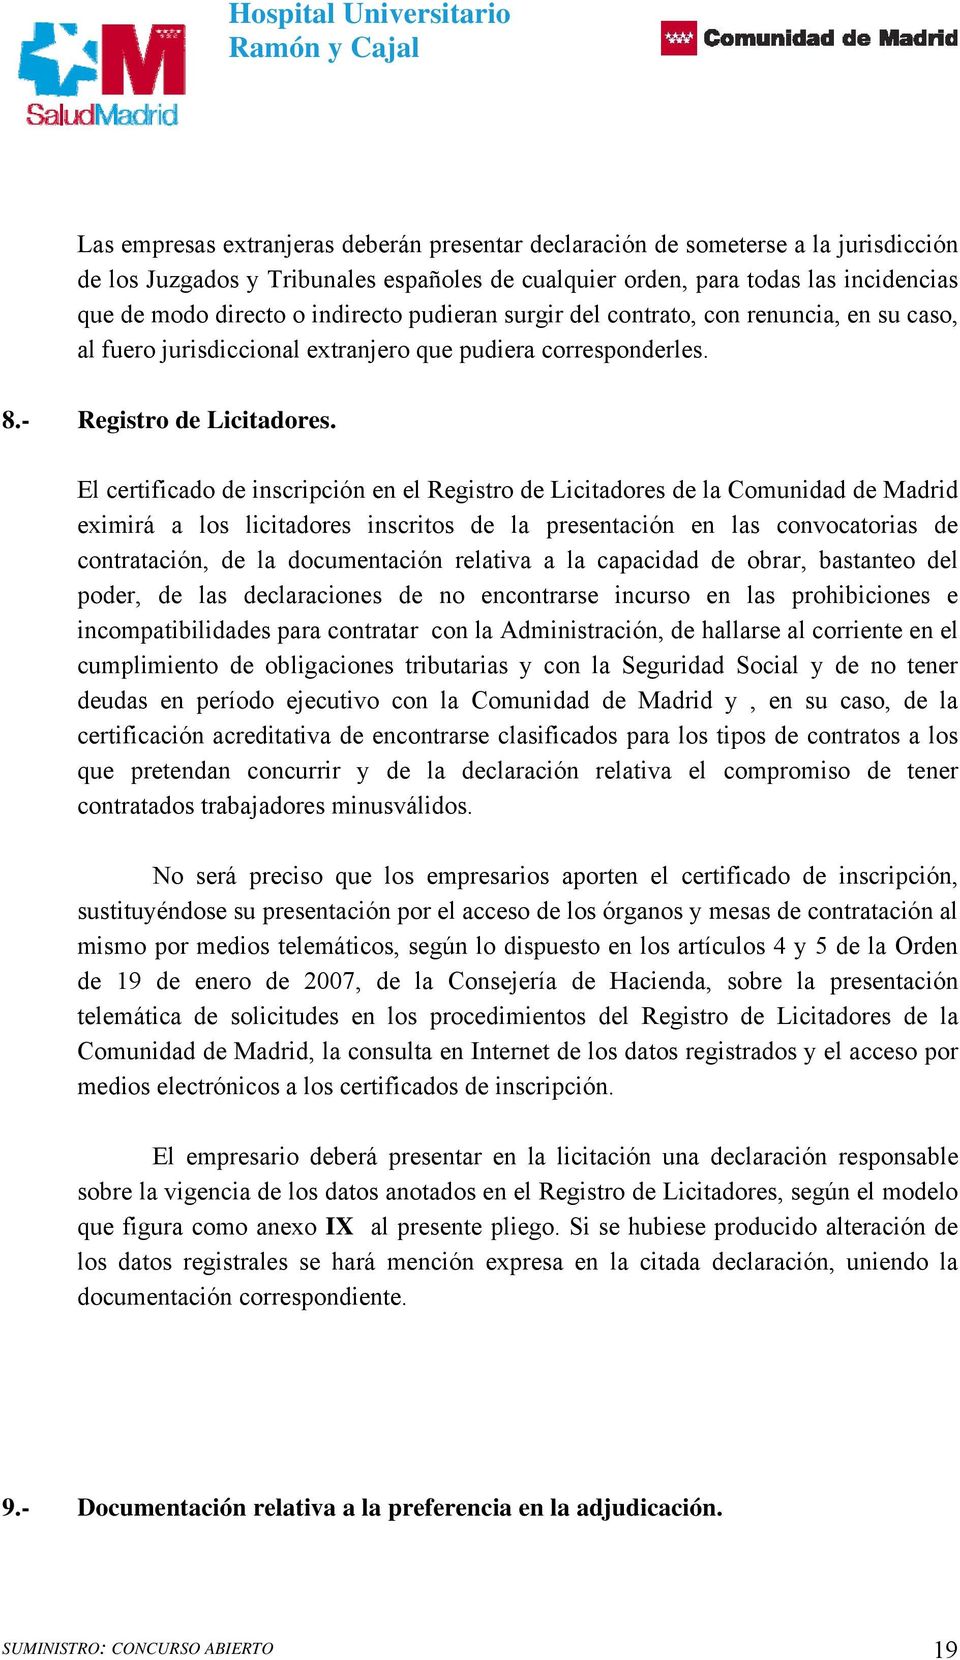 El certificado de inscripción en el Registro de Licitadores de la Comunidad de Madrid eximirá a los licitadores inscritos de la presentación en las convocatorias de contratación, de la documentación